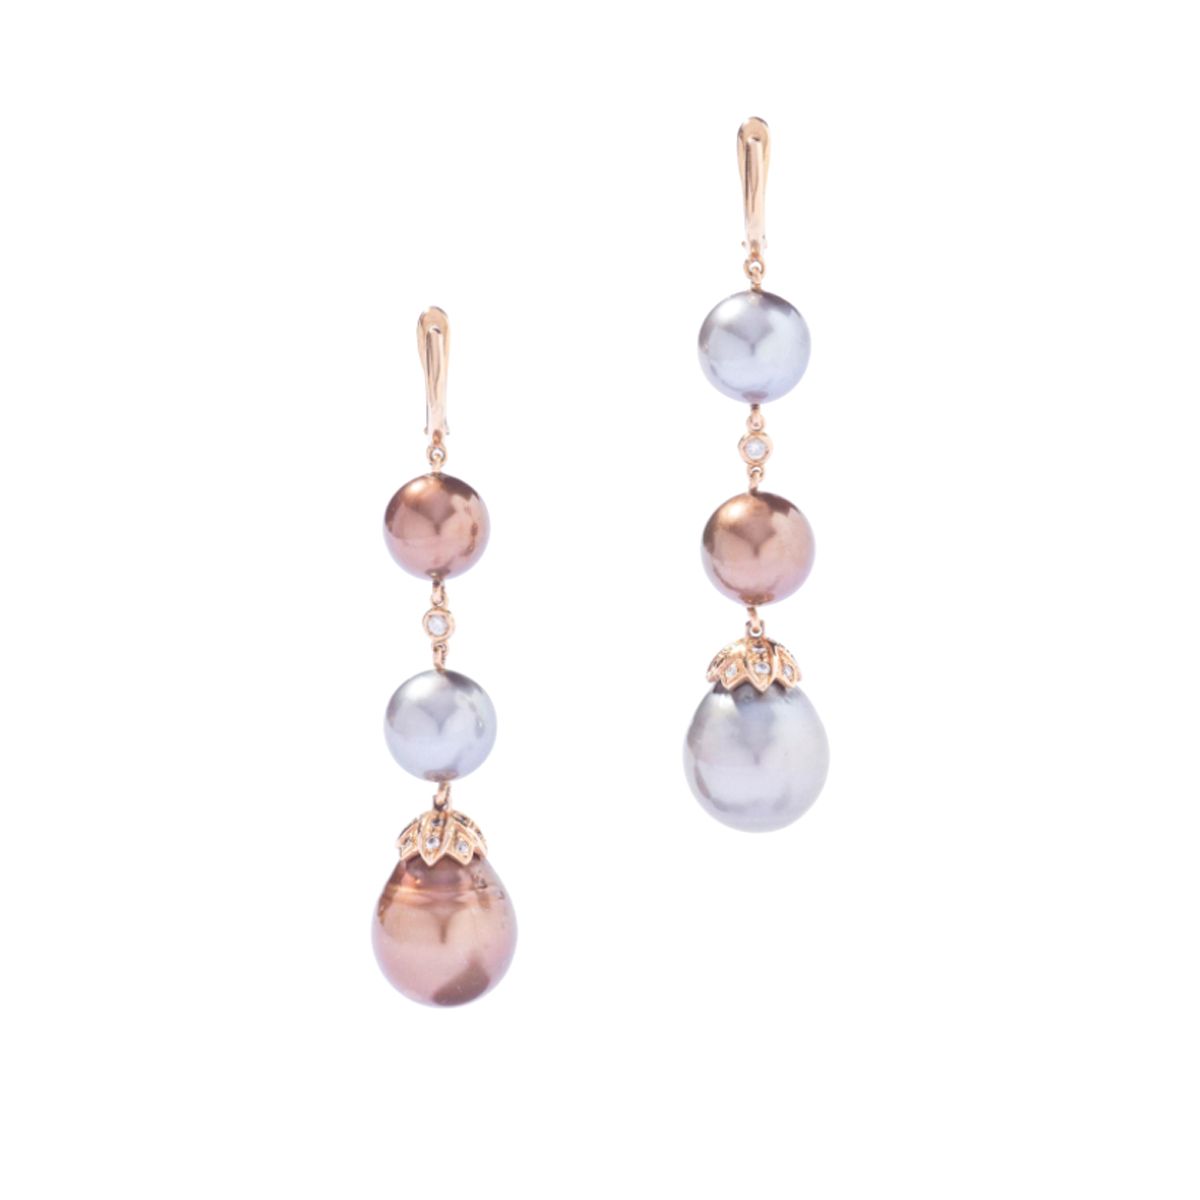 Null 18K玫瑰金耳环，每只耳环上都镶嵌着三颗落下的灰色和棕色养殖珍珠，并饰以钻石。

长度：60毫米

毛重：20.08克